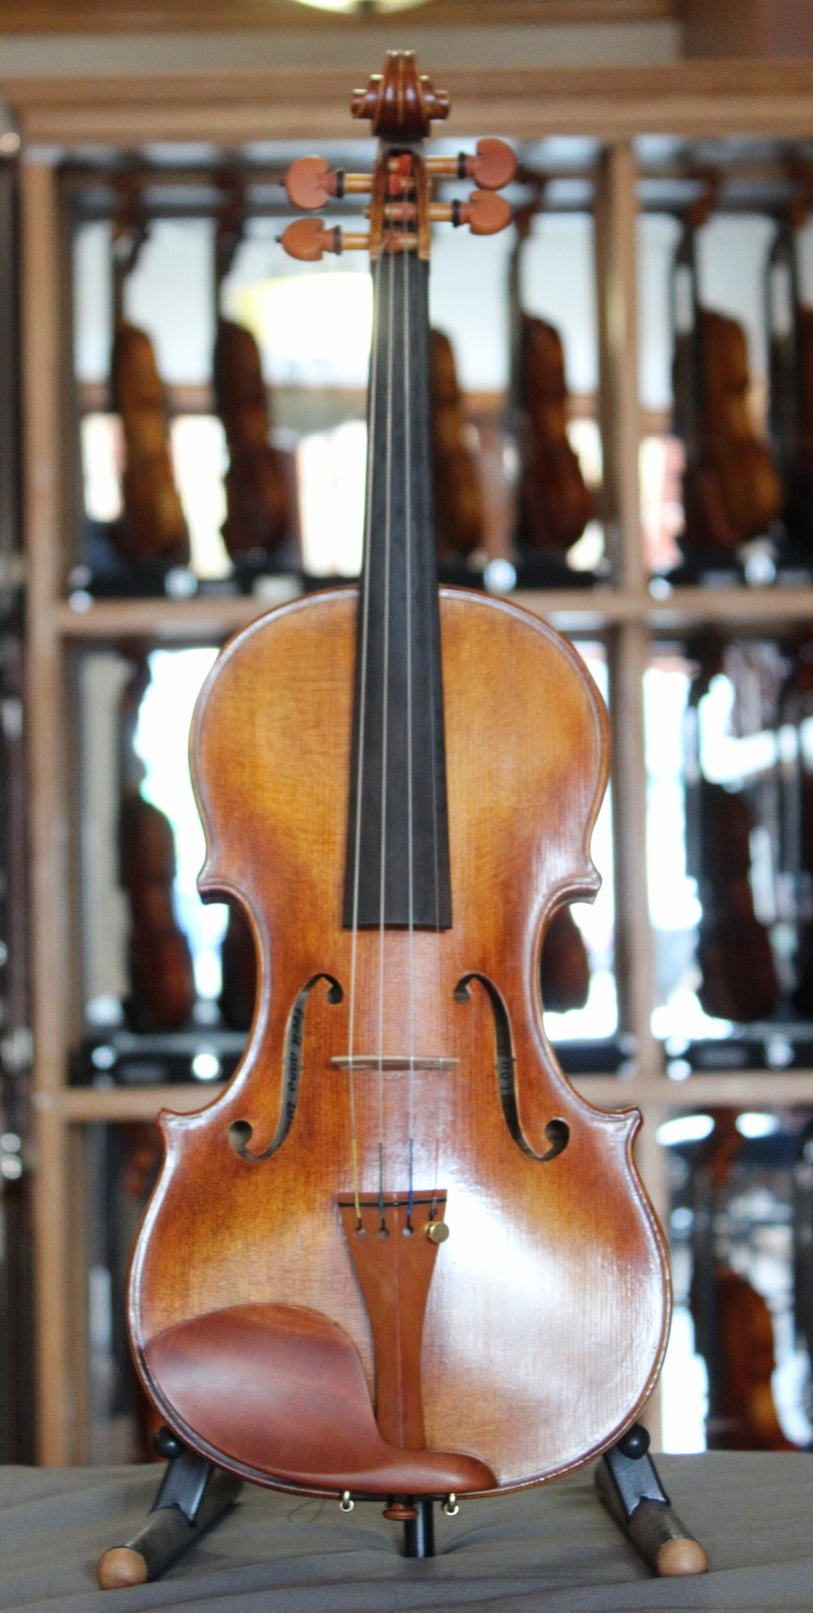 Anton Krutz Violin - 2013